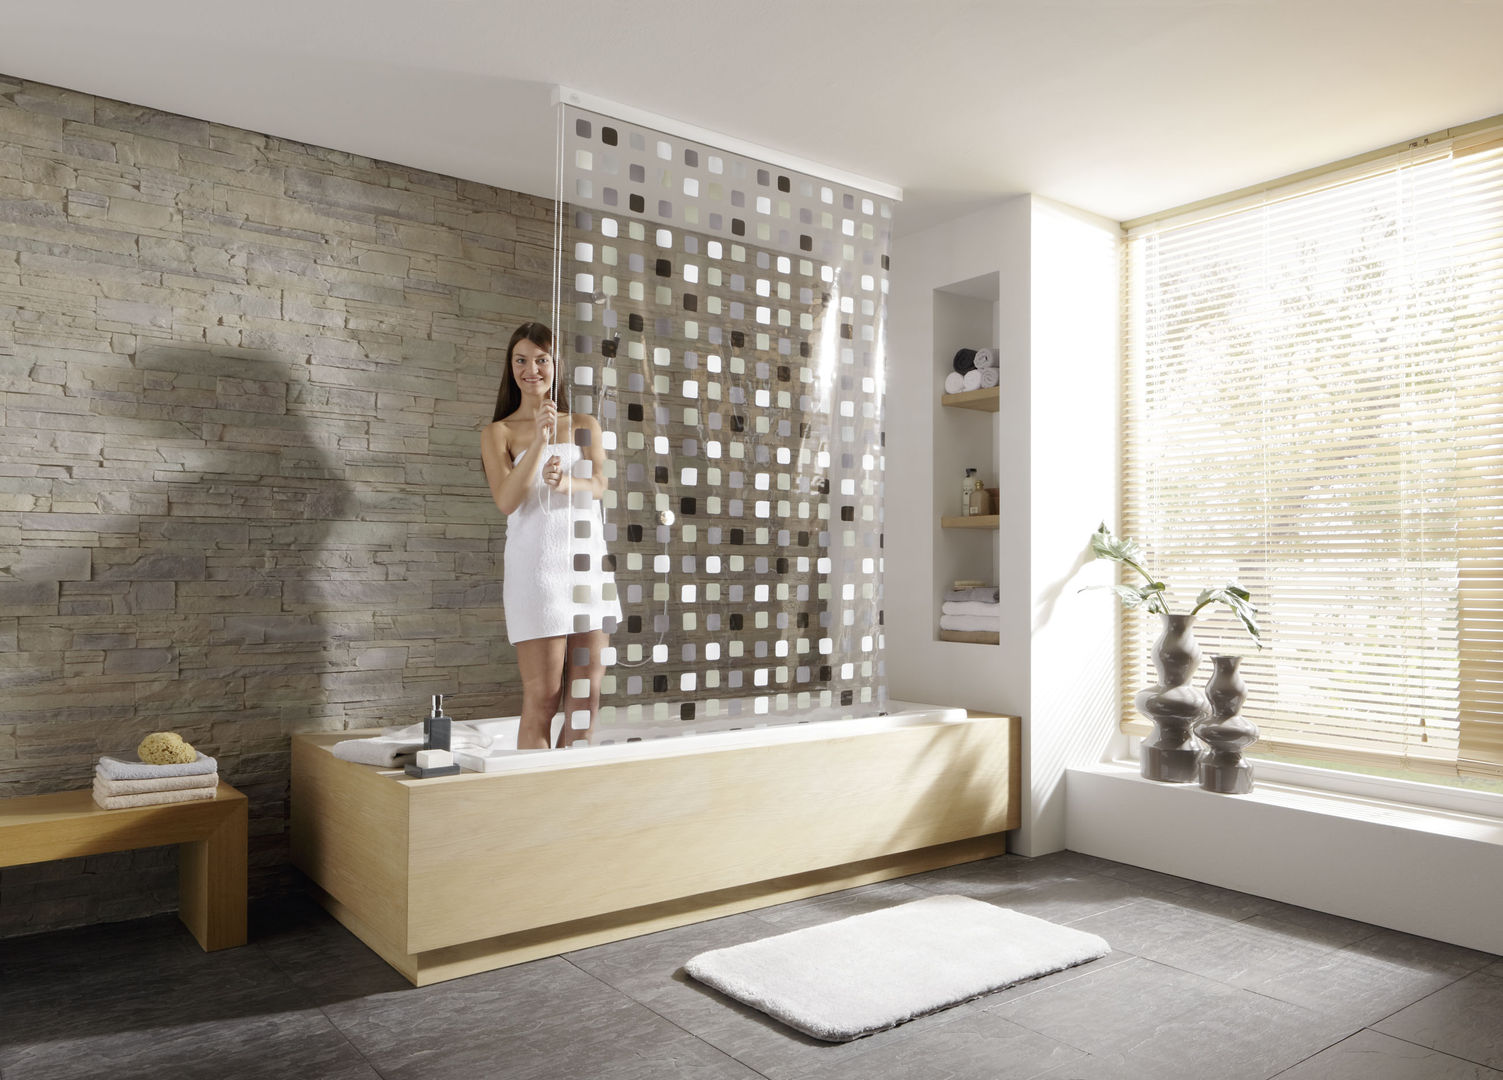 Bien commencer la journée !, Salle de Bains Déco.com Salle de Bains Déco.com Eclectic style bathrooms Plastic Bathtubs & showers